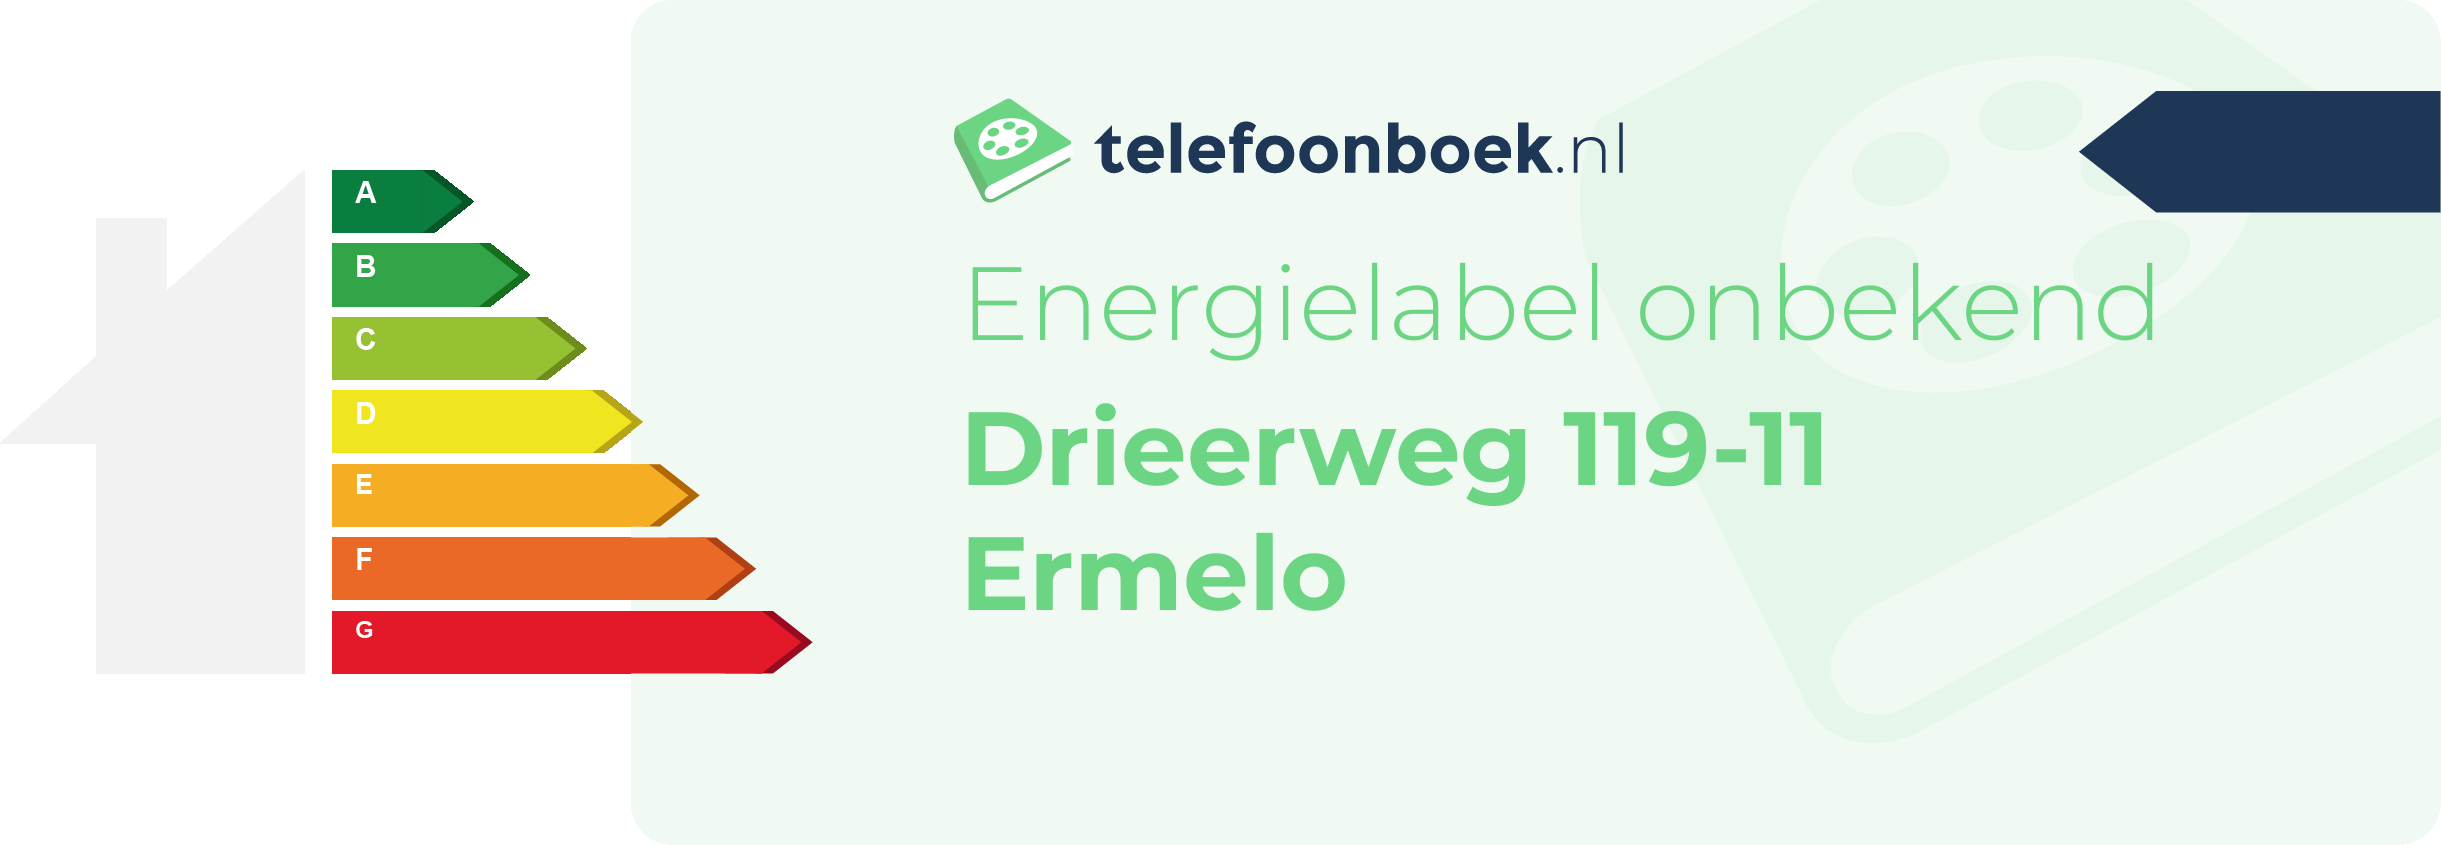 Energielabel Drieerweg 119-11 Ermelo